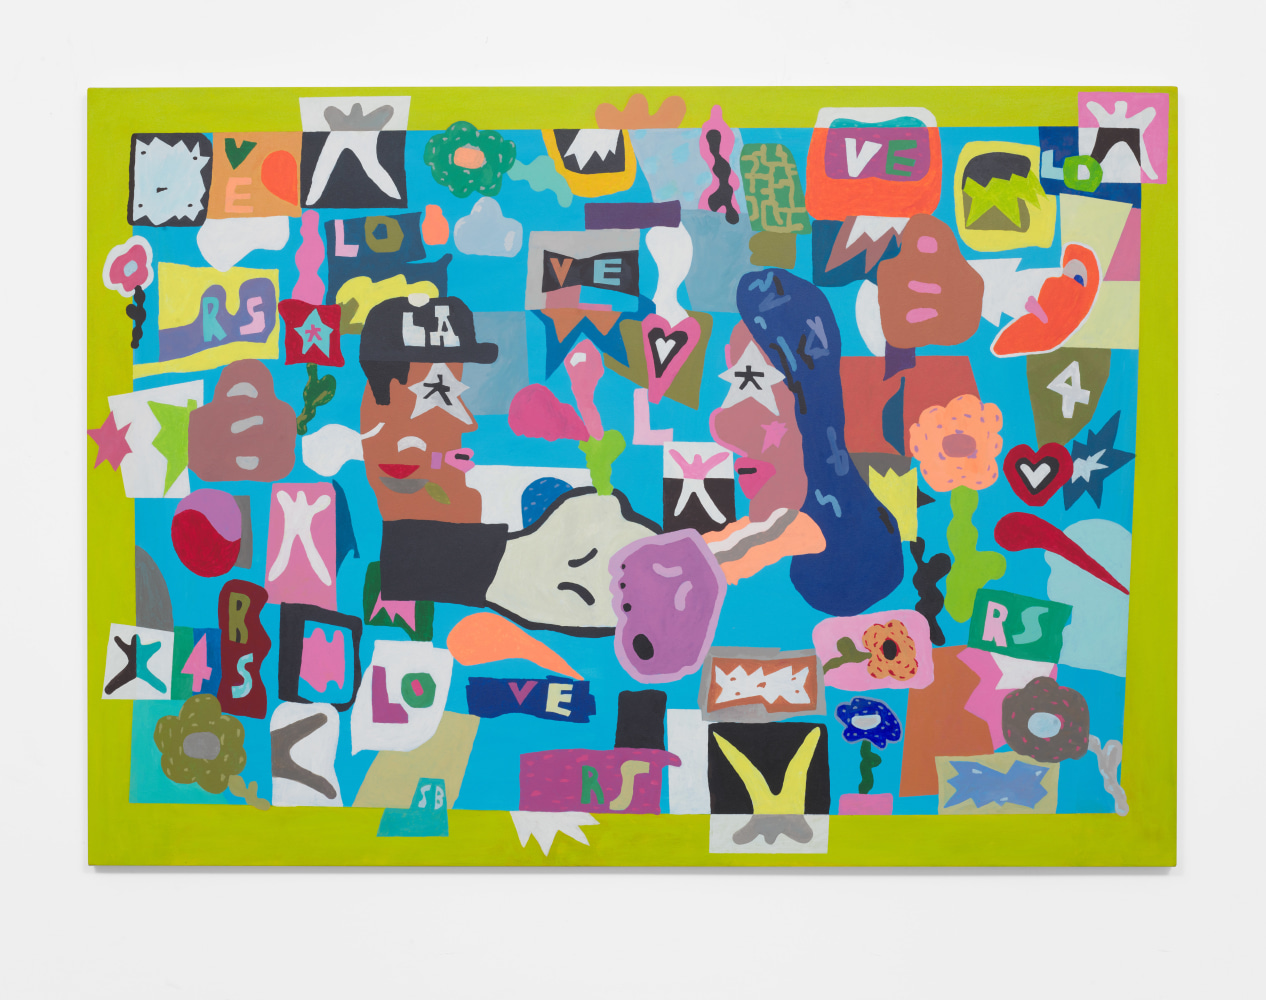 Sammy Binkow
Starcrossed, 2022
Acrylic on canvas
60h x 84w x 1.25d in
152.40h x 213.36w x 3.18d cm